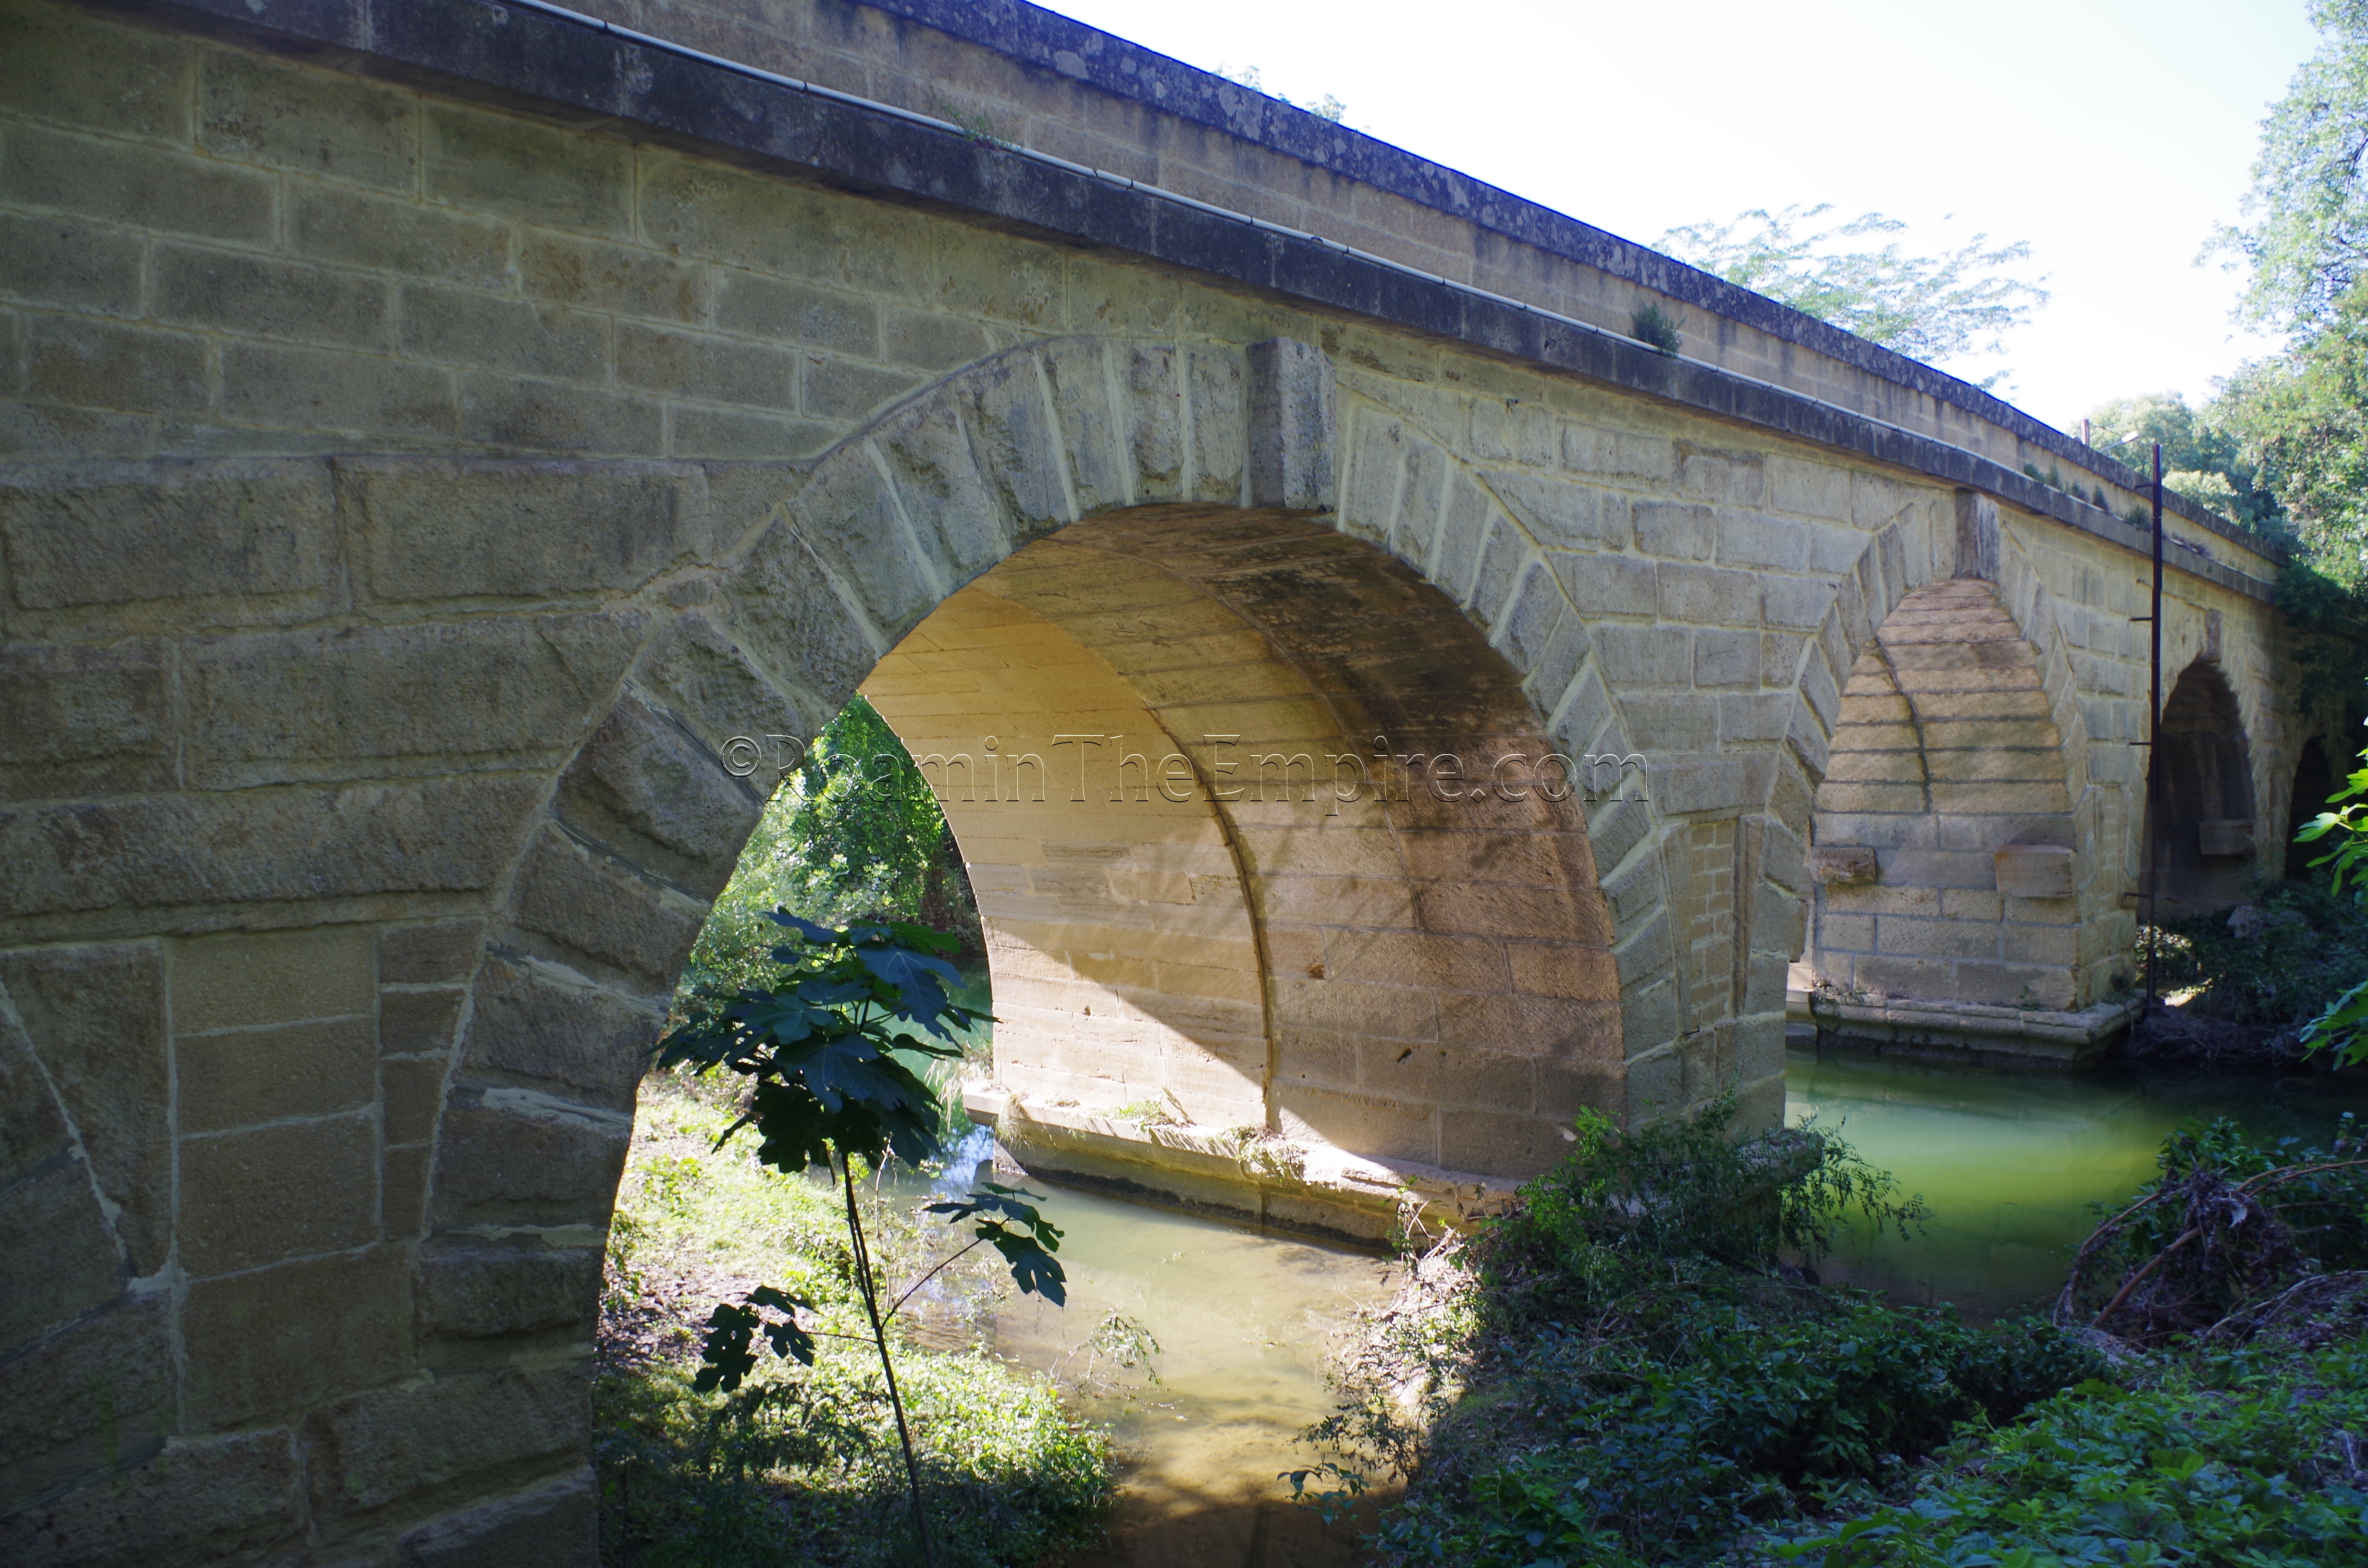 Boisseron Roman bridge.